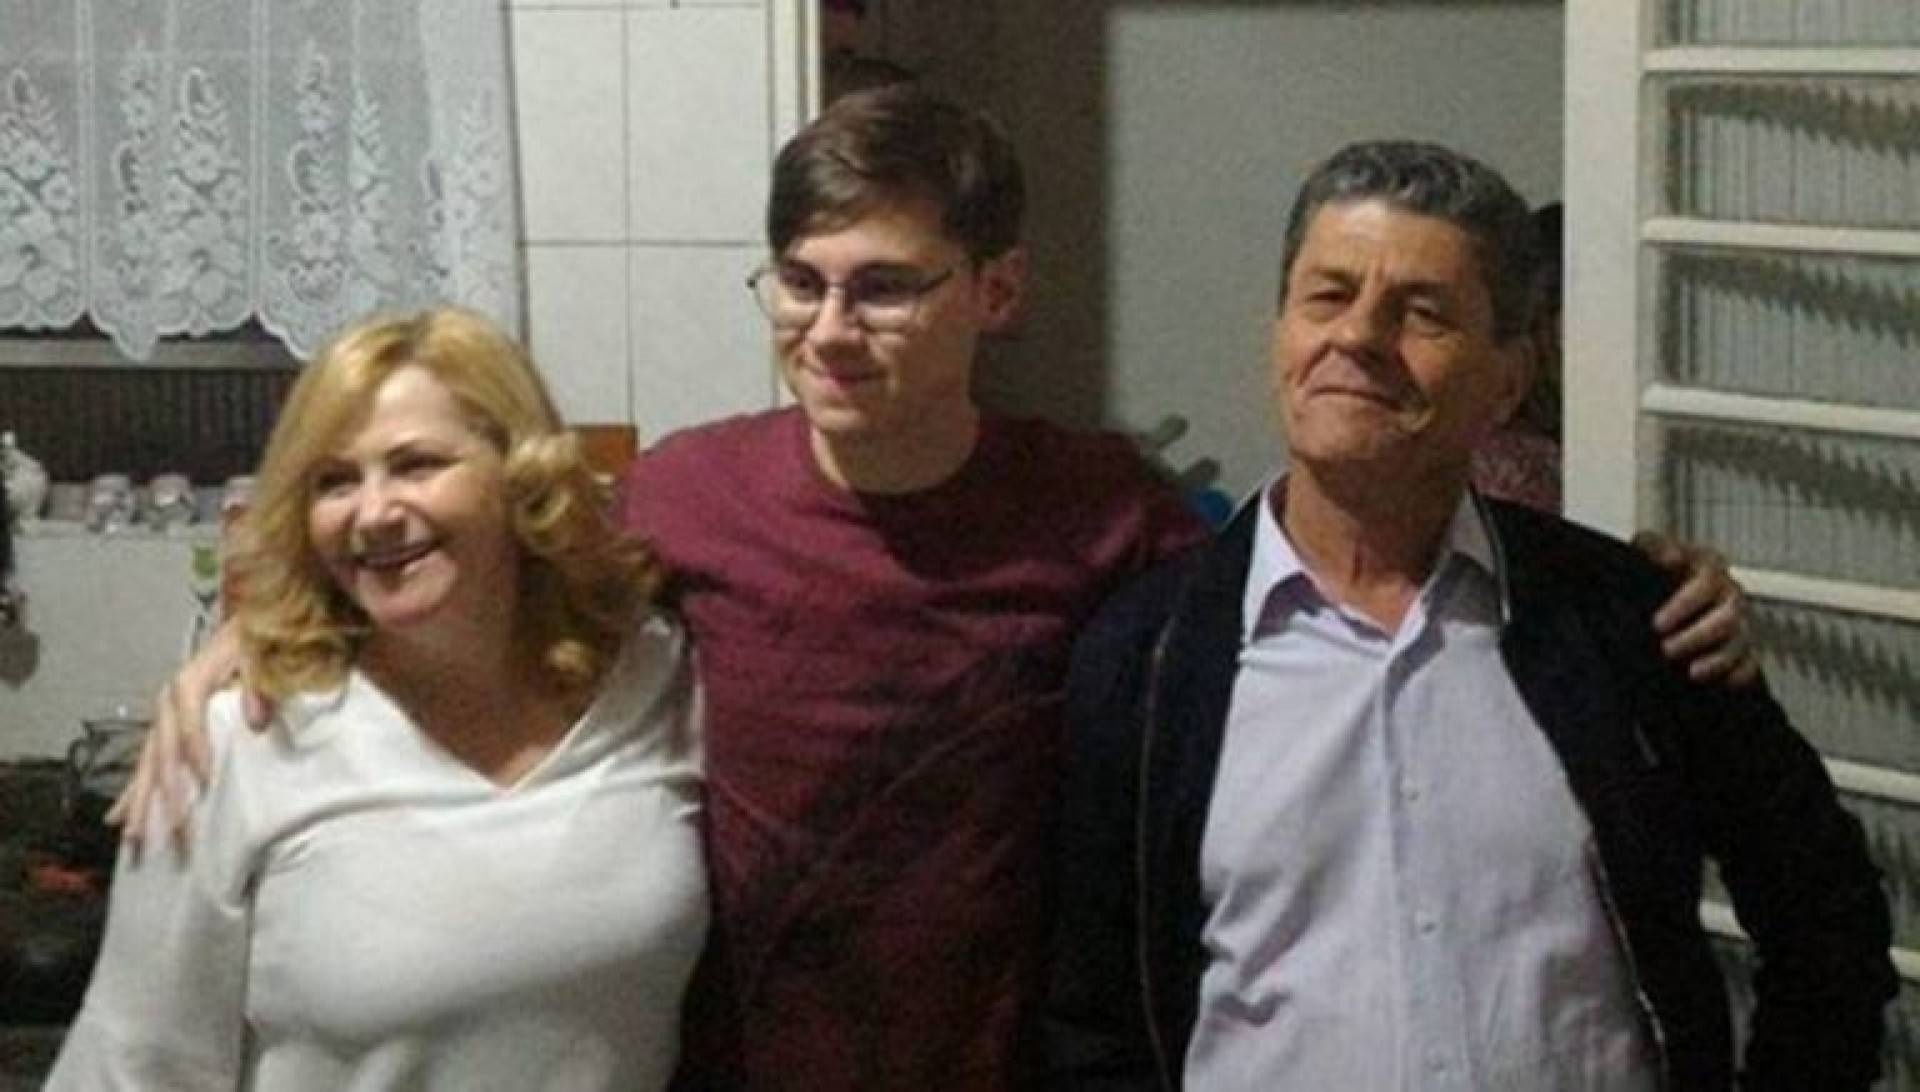 Rafael chegou à casa da namorada acompanhado pelos pais João Alcisio Miguel, de 52, e Miriam Selma Miguel, de 50 - Reprodução